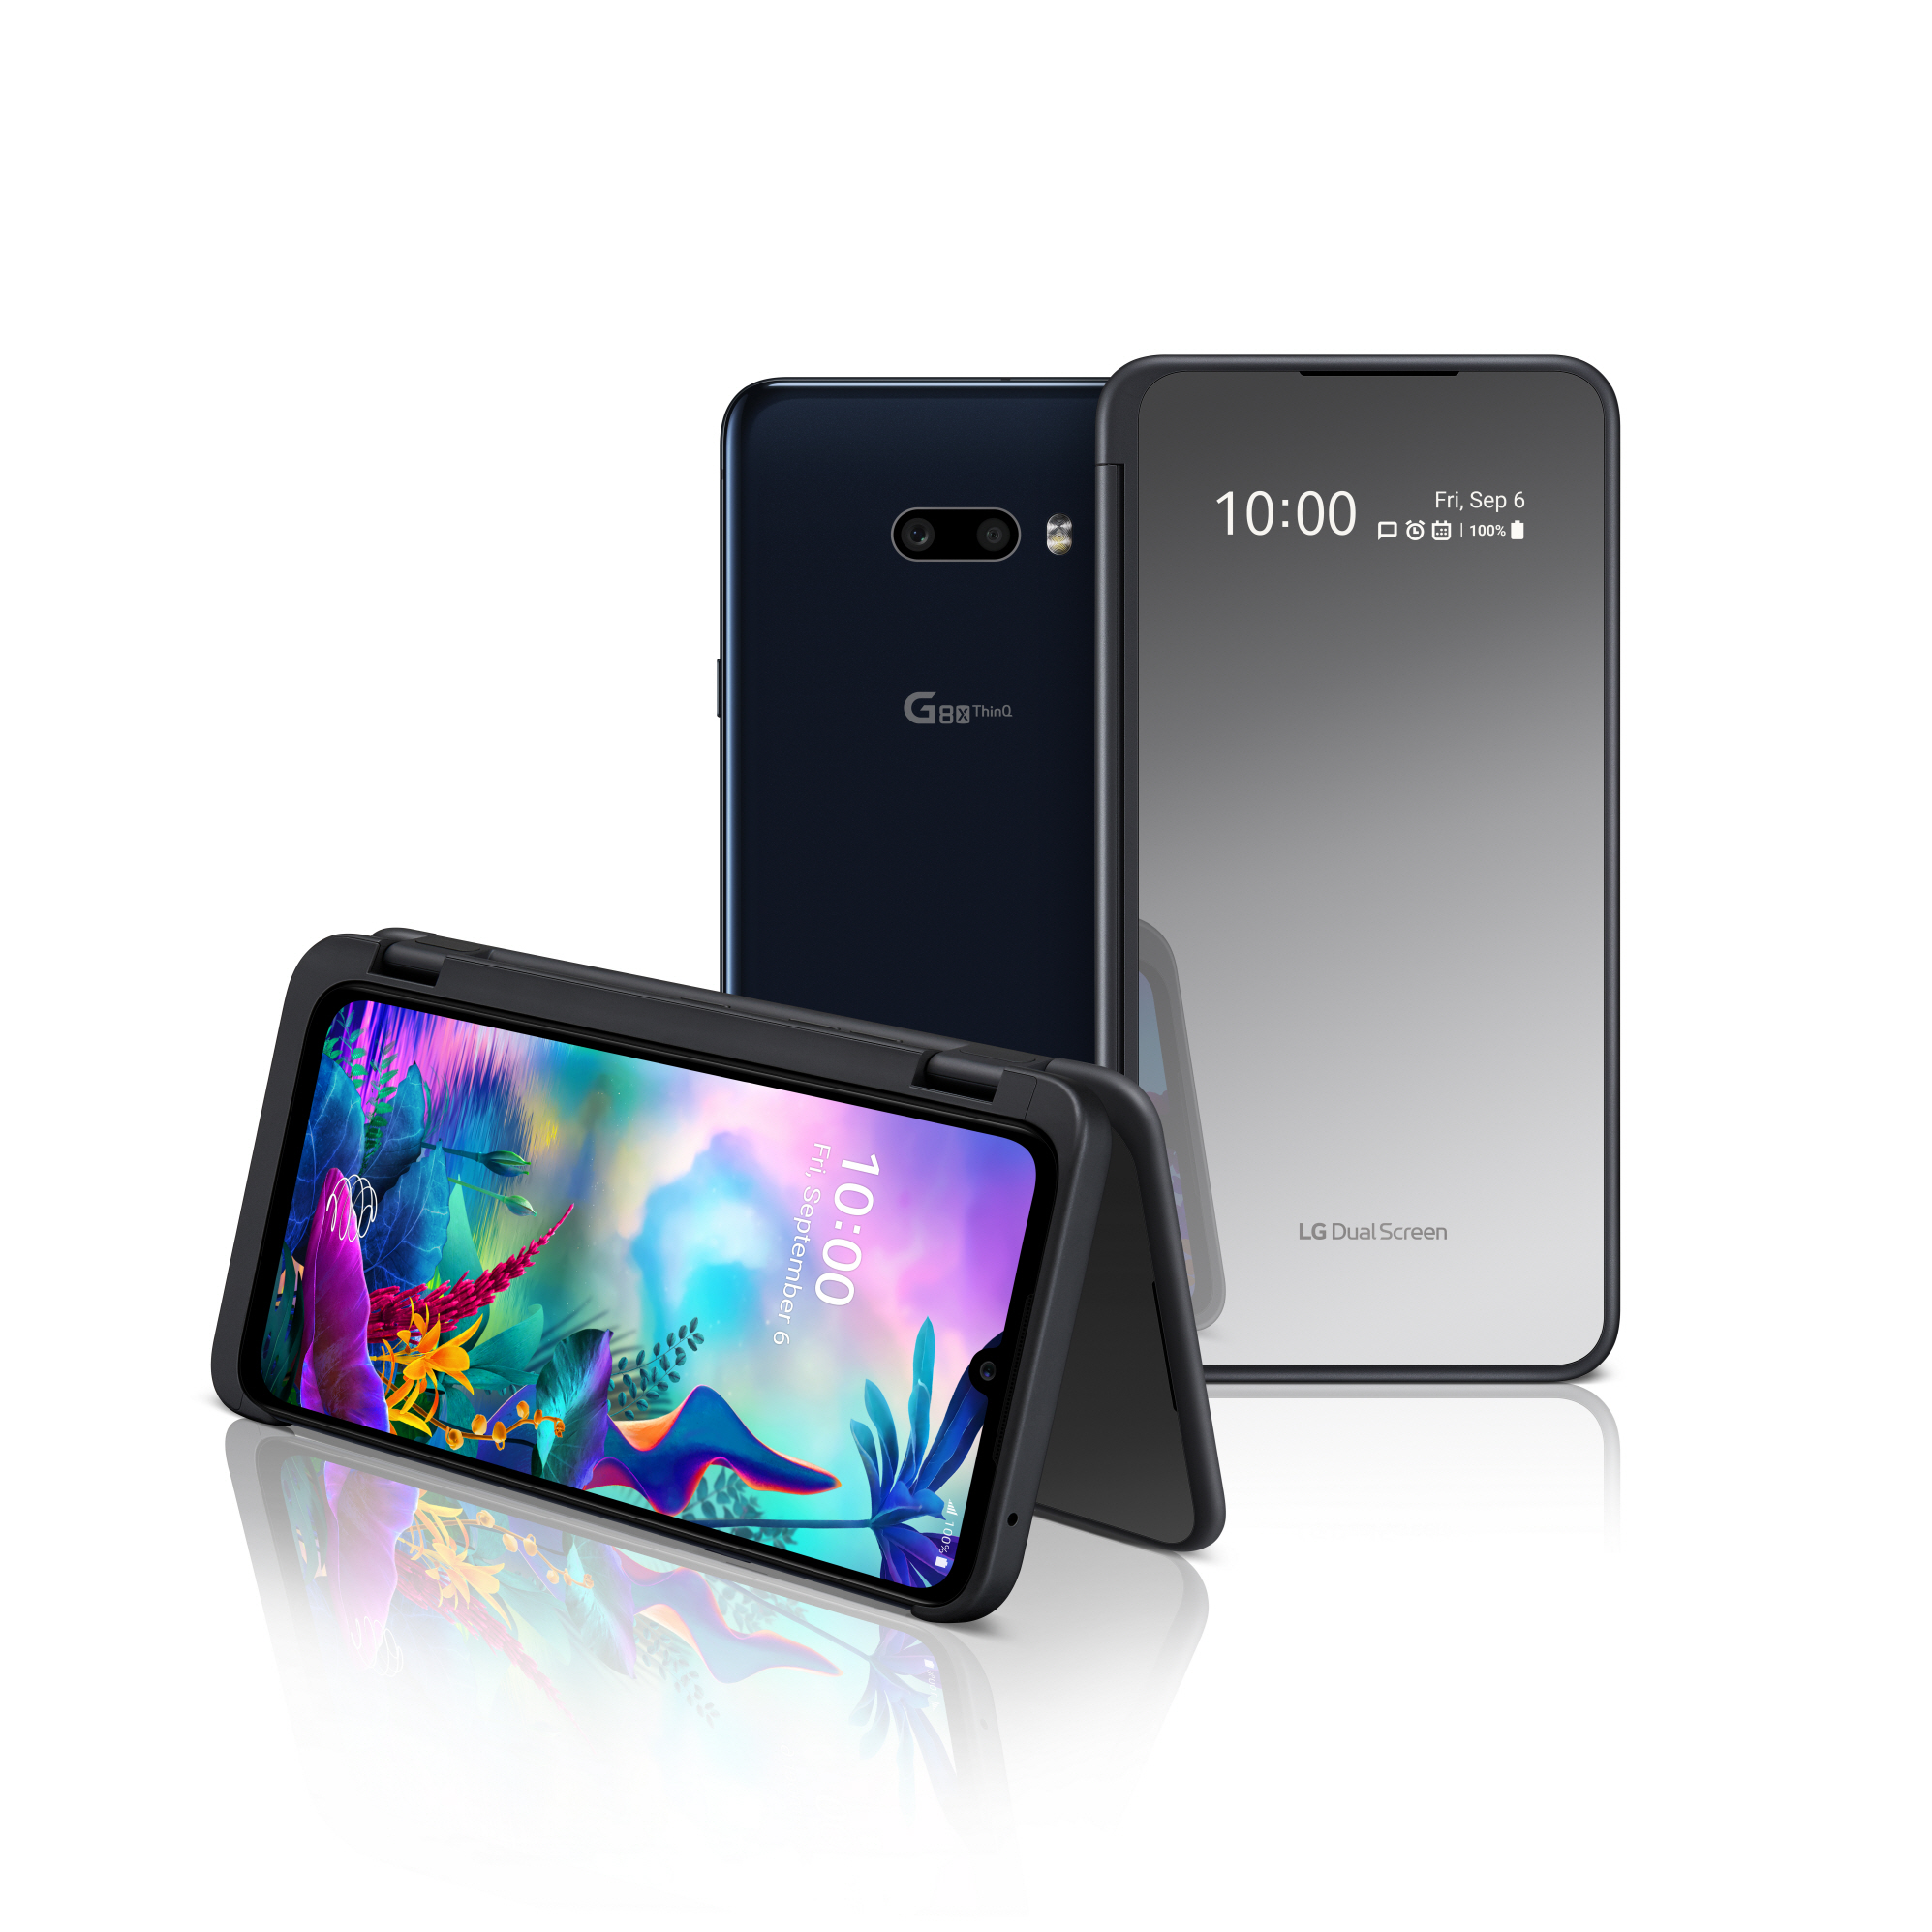 Finalmente è disponibile in Italia il G8X ThinQ, il primo smartphone Dual Screen di LG presentato per la prima volta a IFA 2019